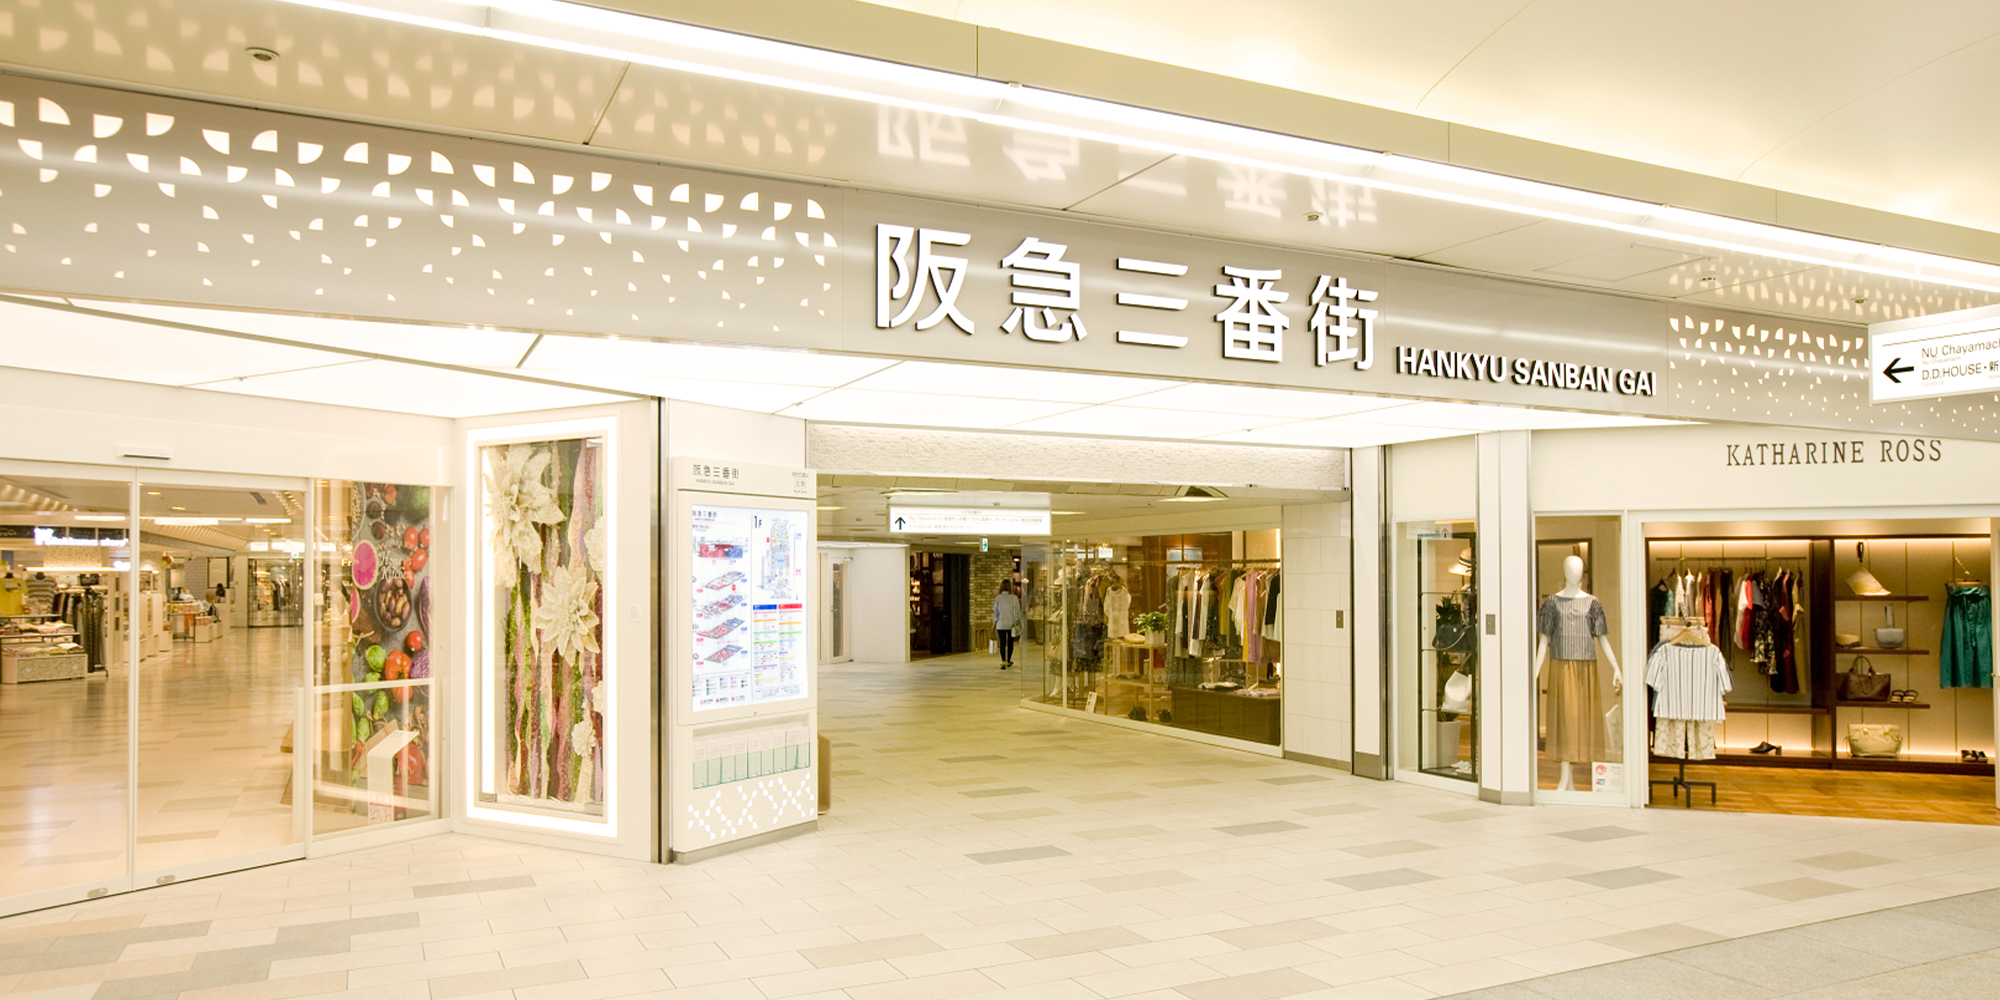 阪急三番街オフィシャルサイトの多言語コンテンツマーケティング